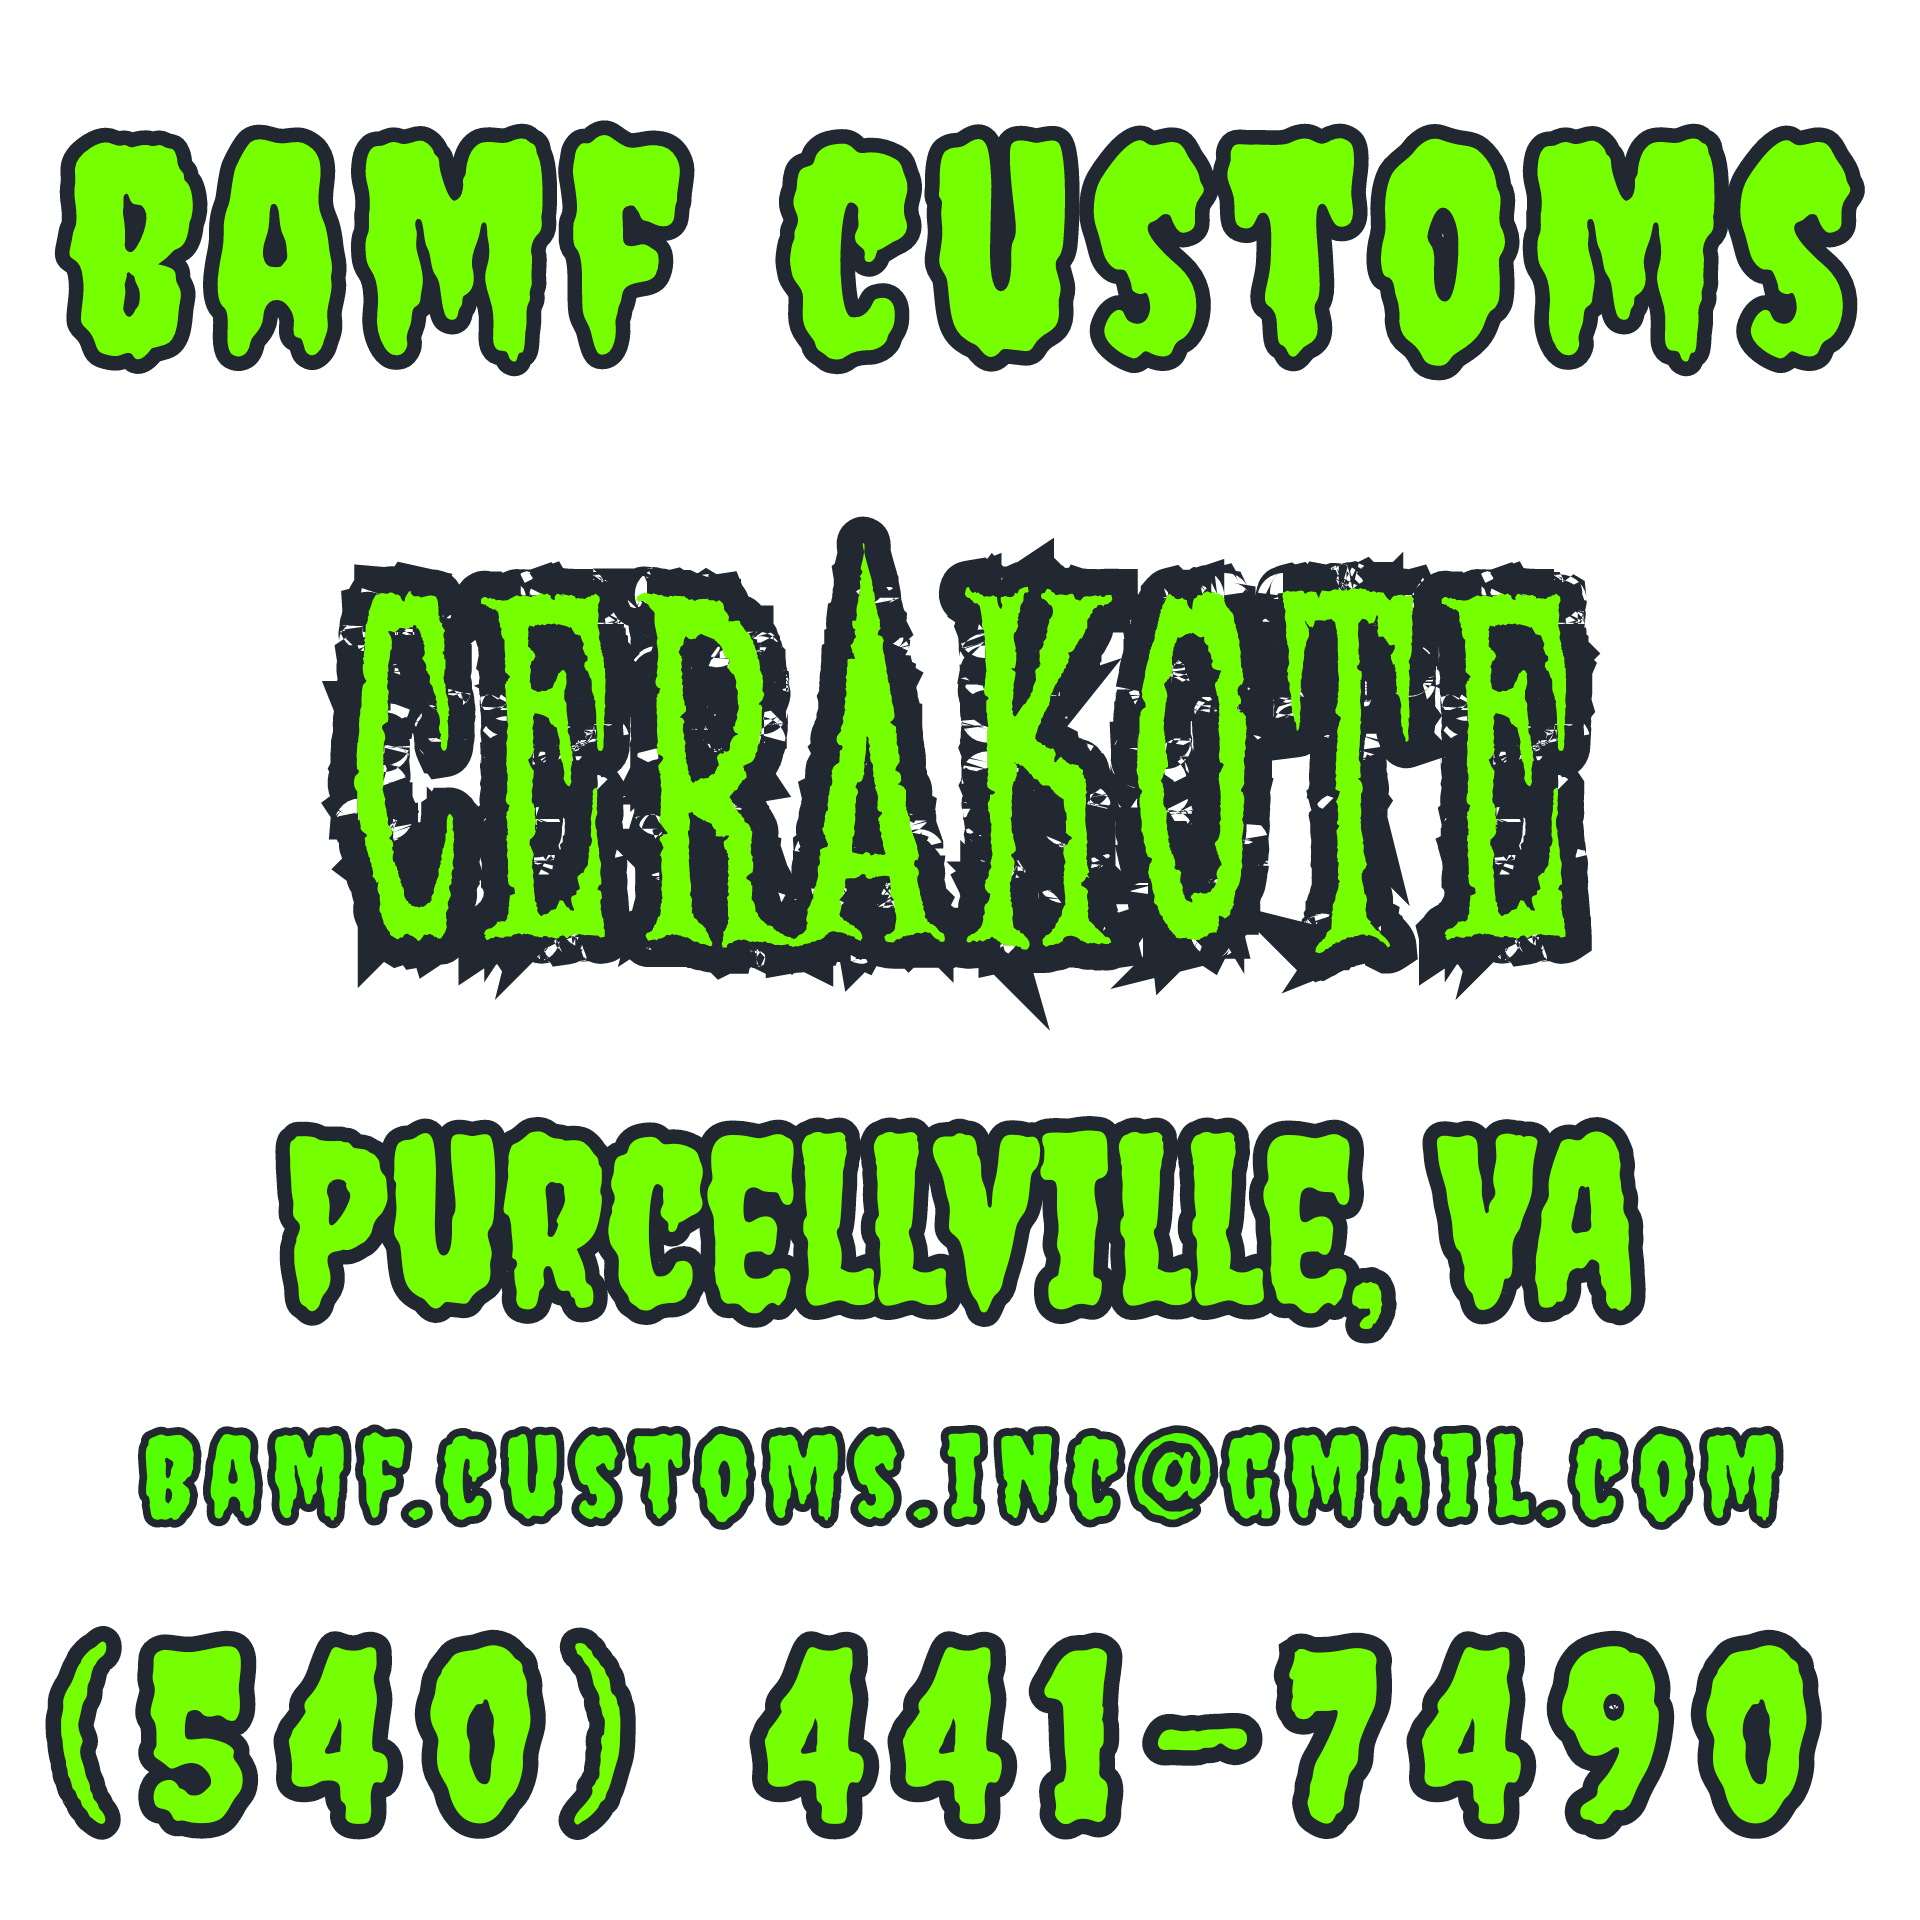 BAMF Customs Cerakote